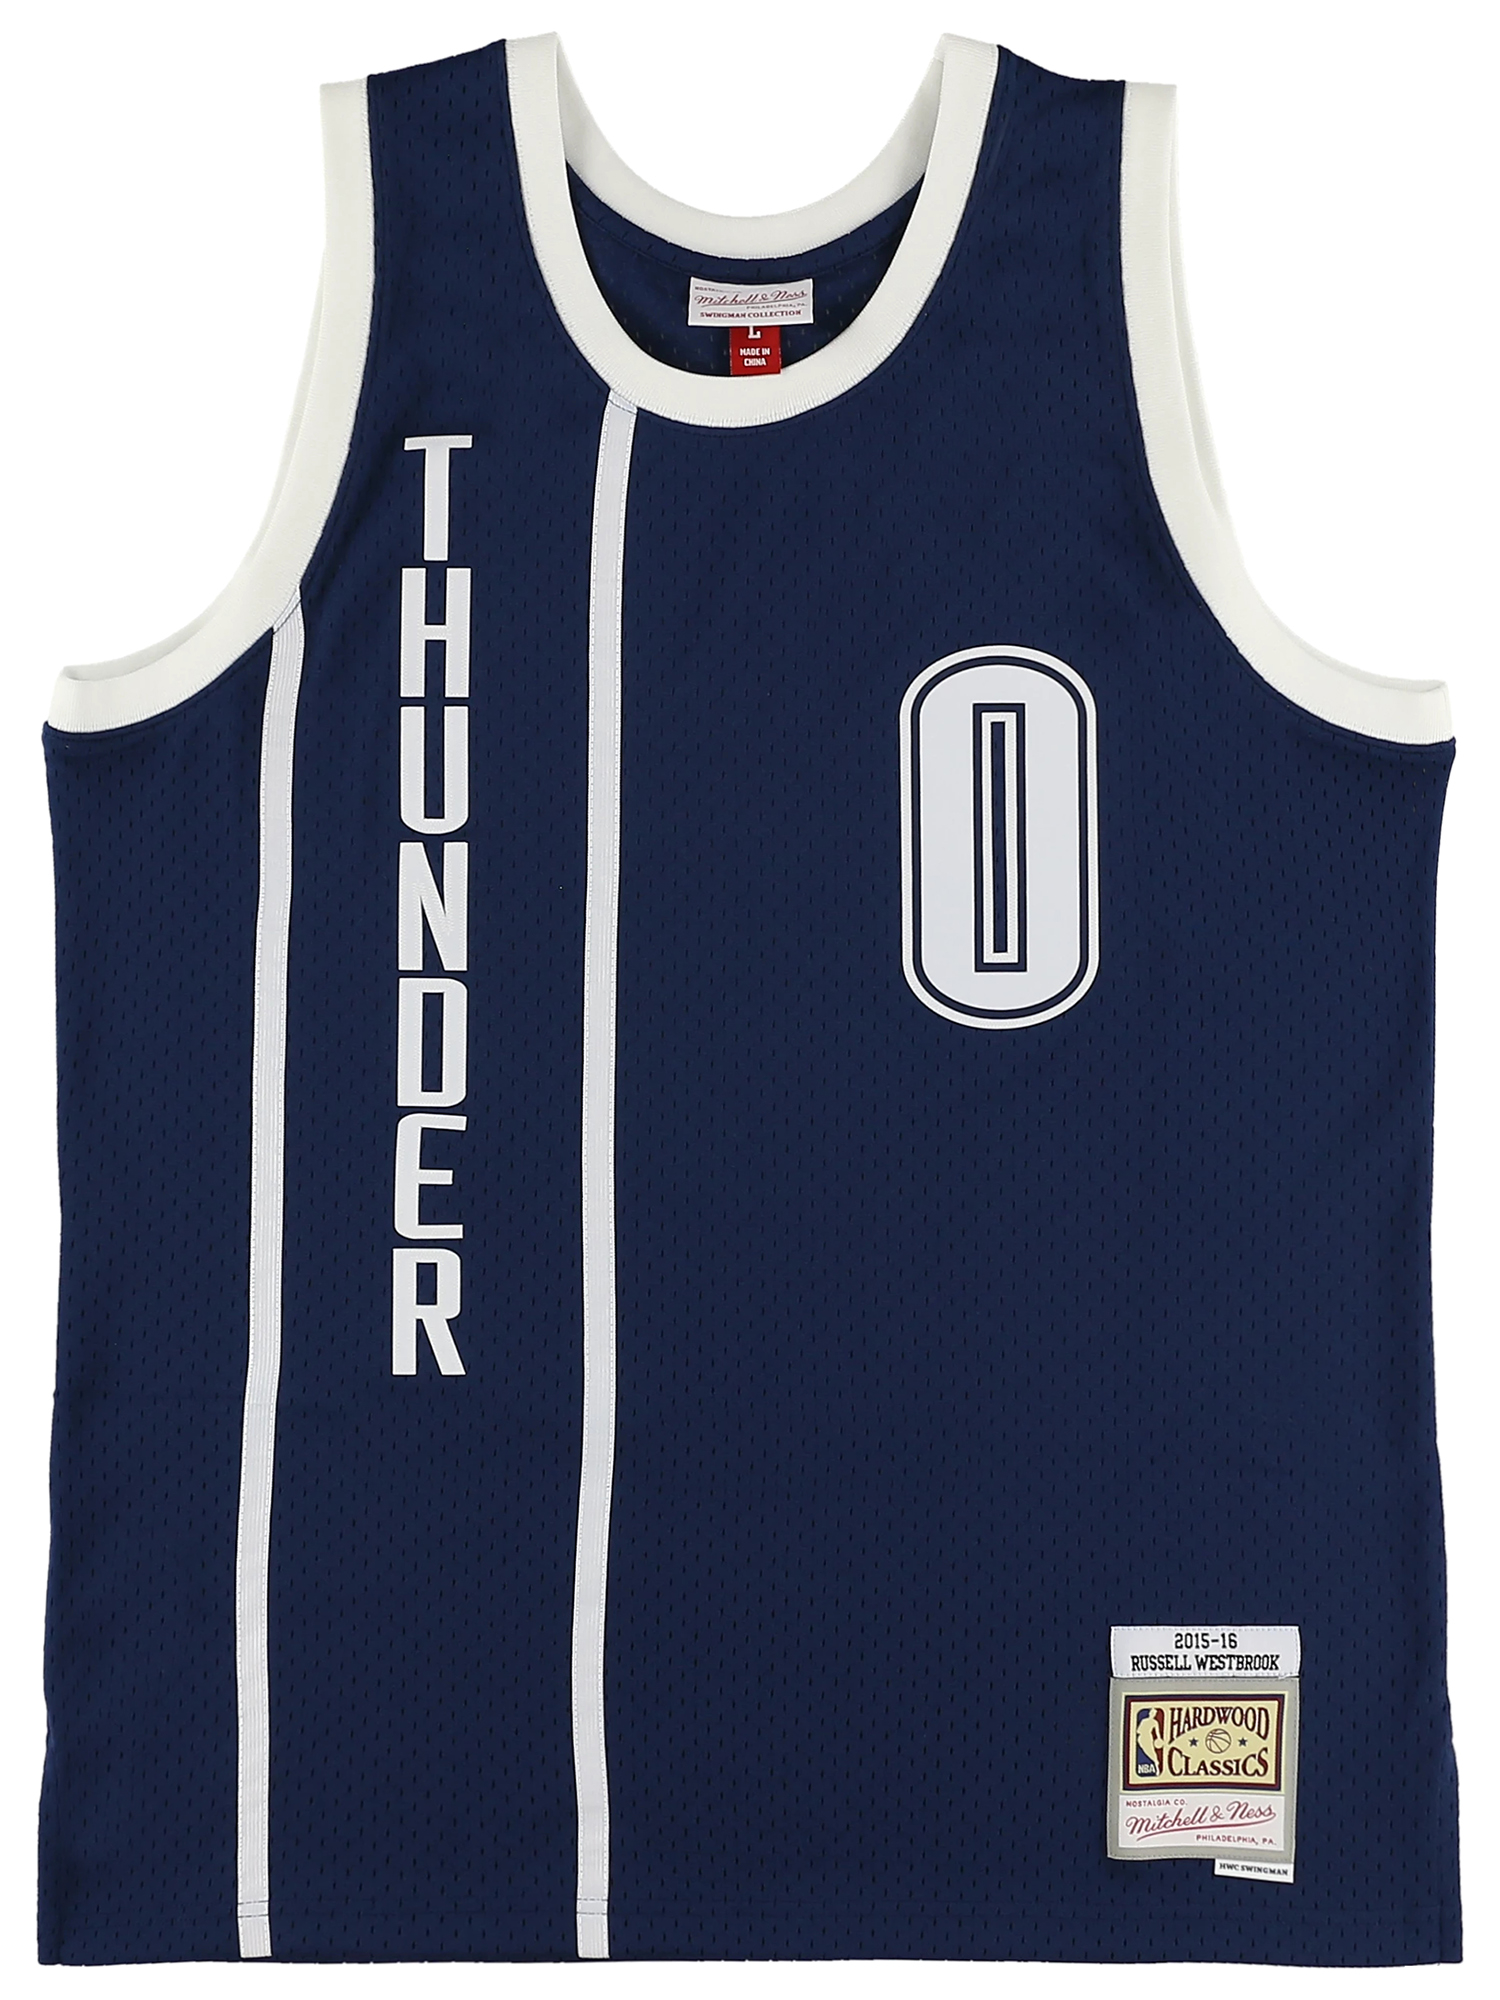 ラッセル・ウエストブルック サンダー オルタネイト スイングマンジャージ 2015-16 OKLAHOMA CITY THUNDER NBA ALT.  JERSEY THUNDER 2015